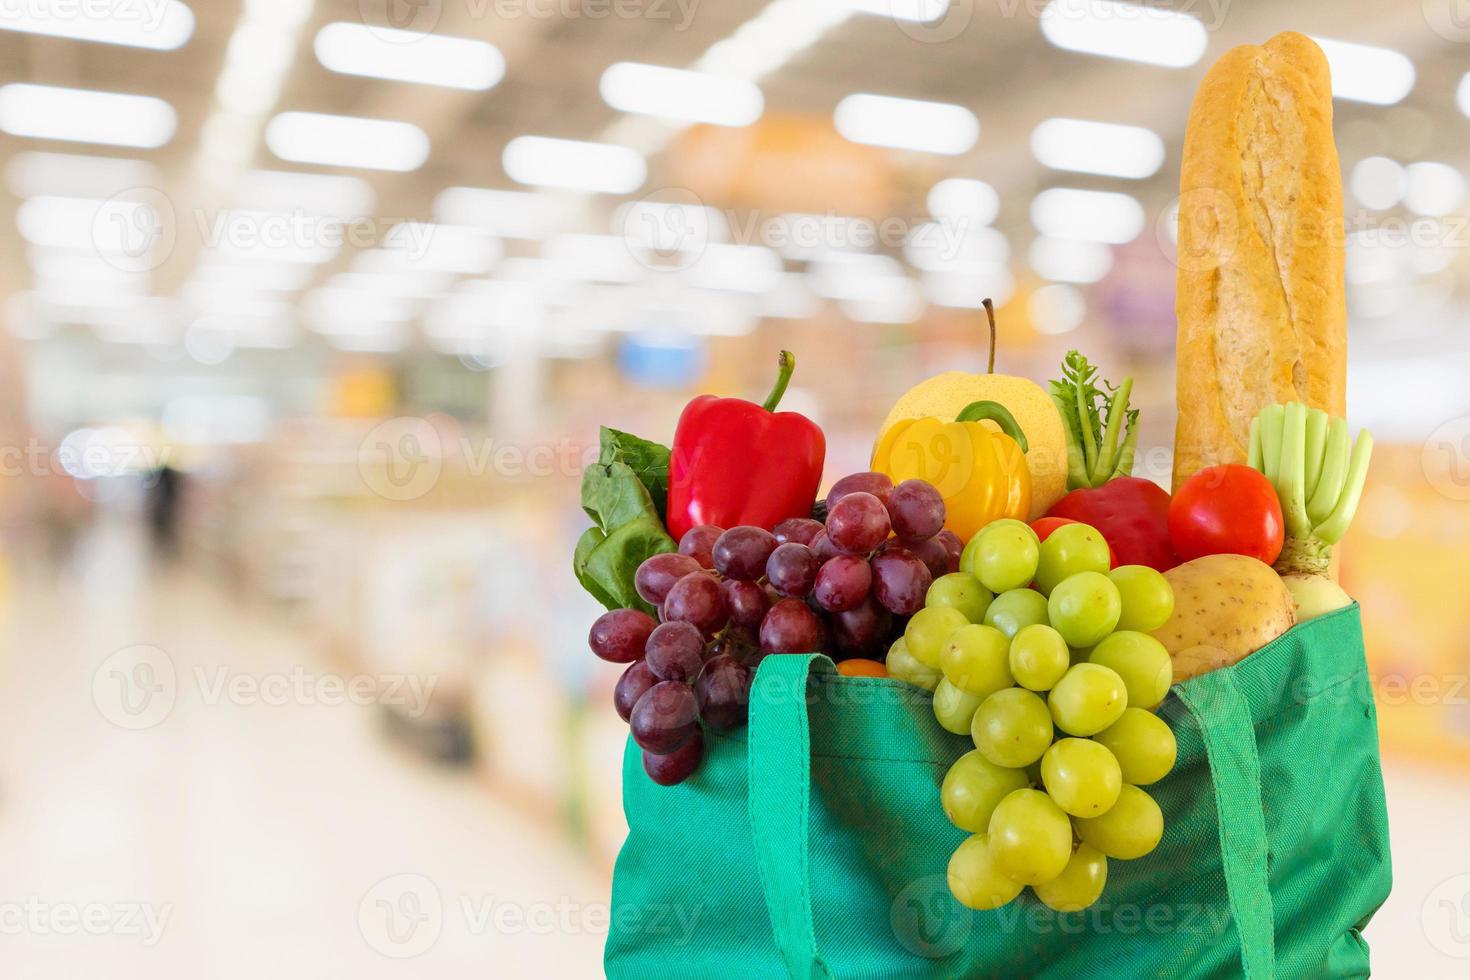 frisches obst und gemüse in wiederverwendbarer grüner einkaufstasche mit supermarkt-lebensmittelgeschäft verschwommener defokussierter hintergrund mit bokeh-licht foto